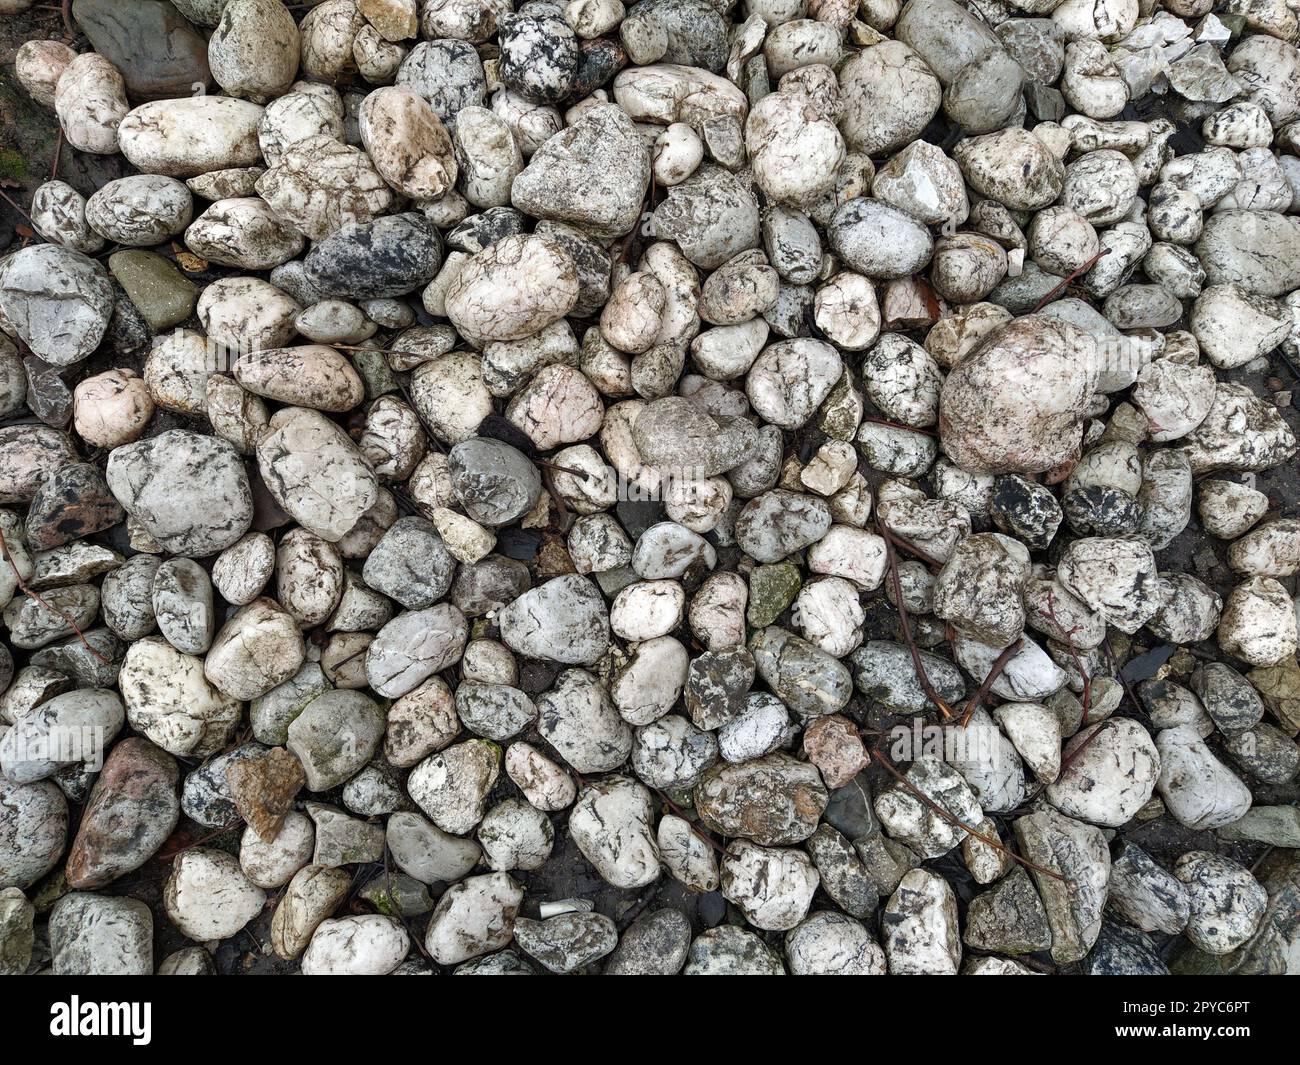 Runde weiße und graue Steine, ähnlich wie heller Marmor. Wunderschöne nasse, glänzende Steine nach Regen. Nahaufnahme bei Tageslicht. Zweige und Blätter Stockfoto